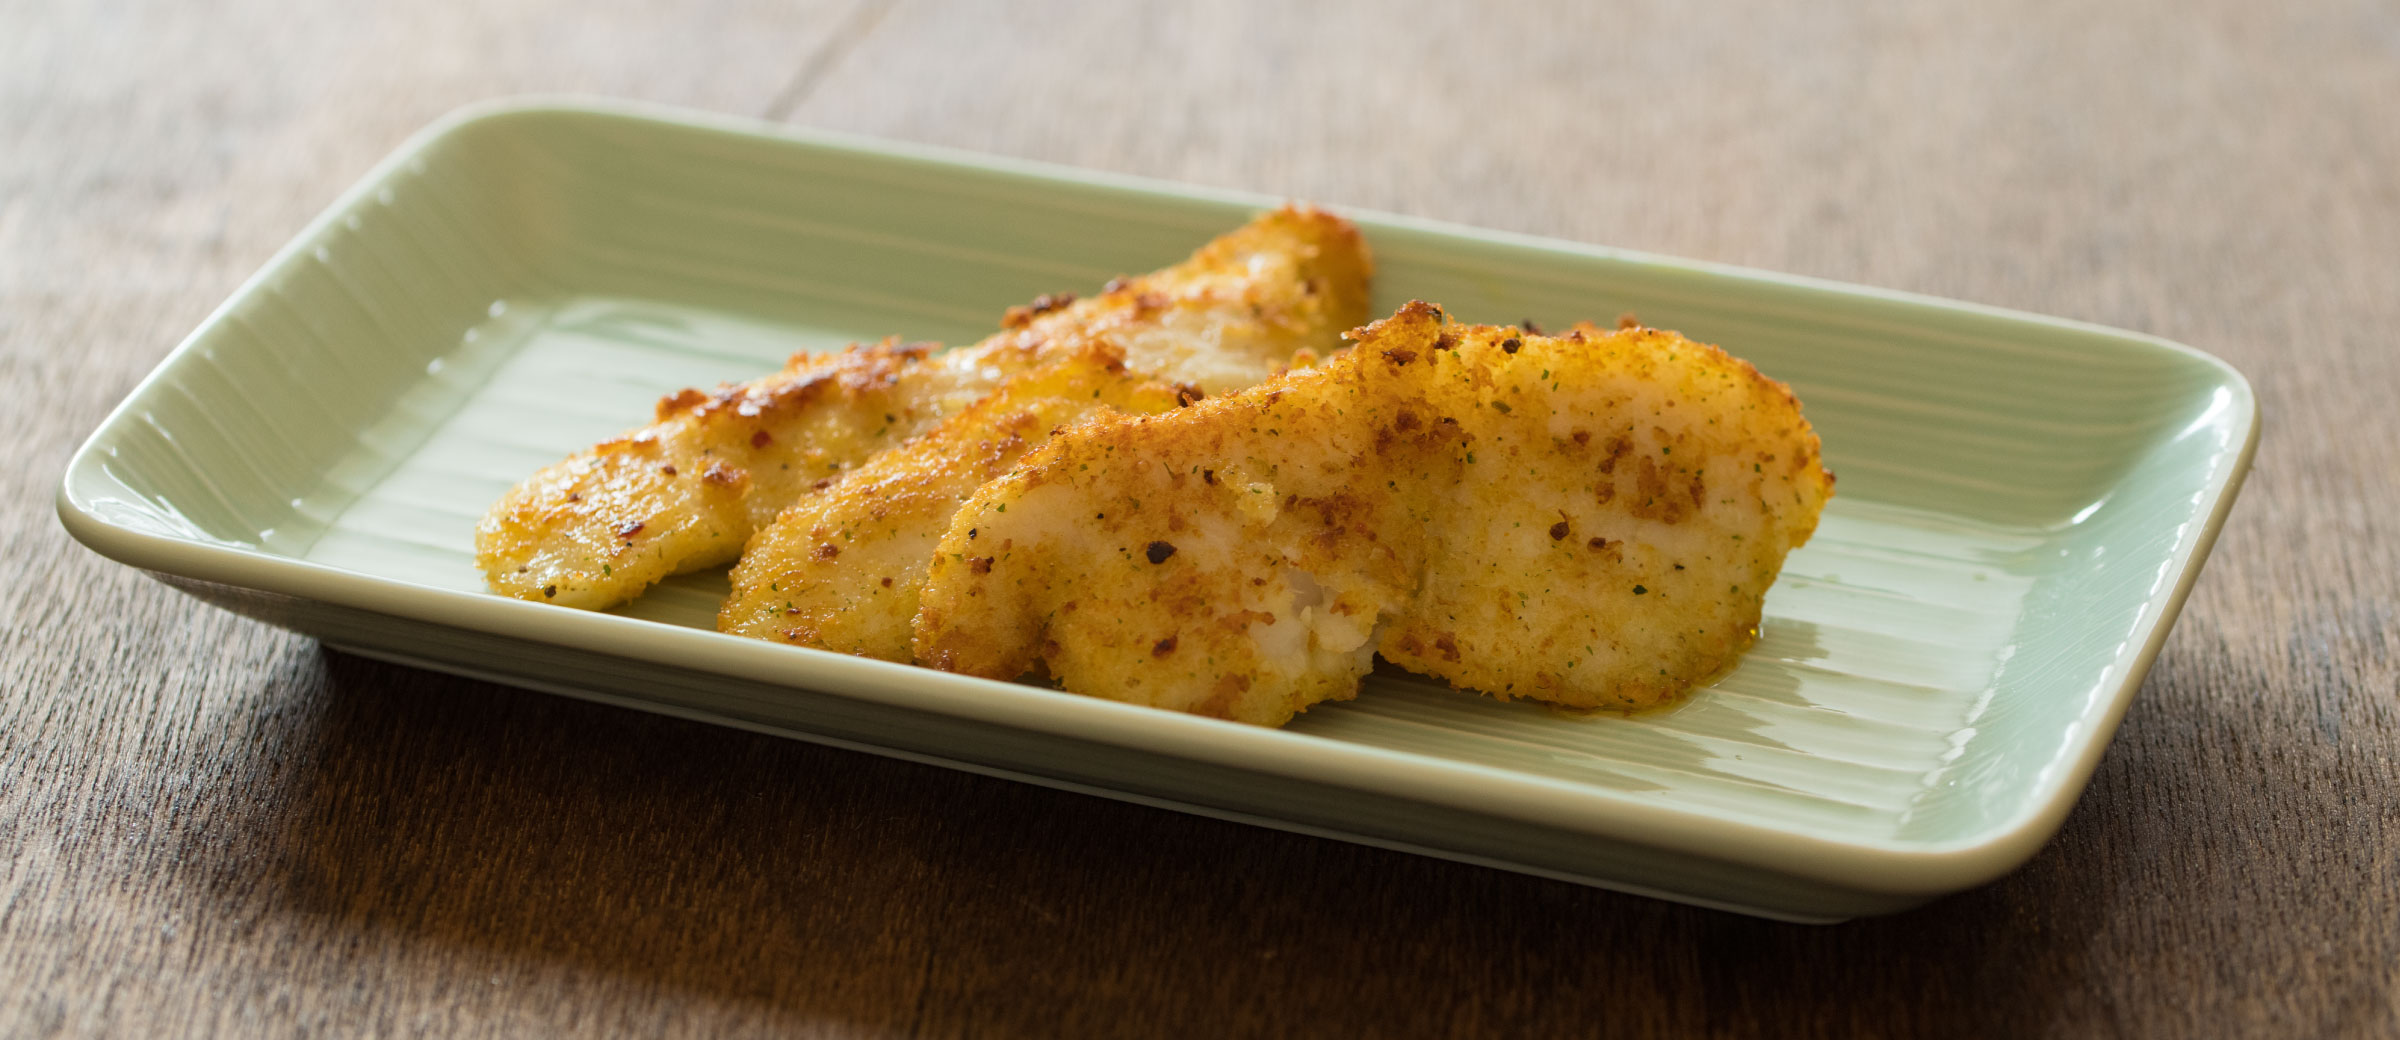 フライパンソテーシリーズ 白身魚の香草チーズソテー調理写真